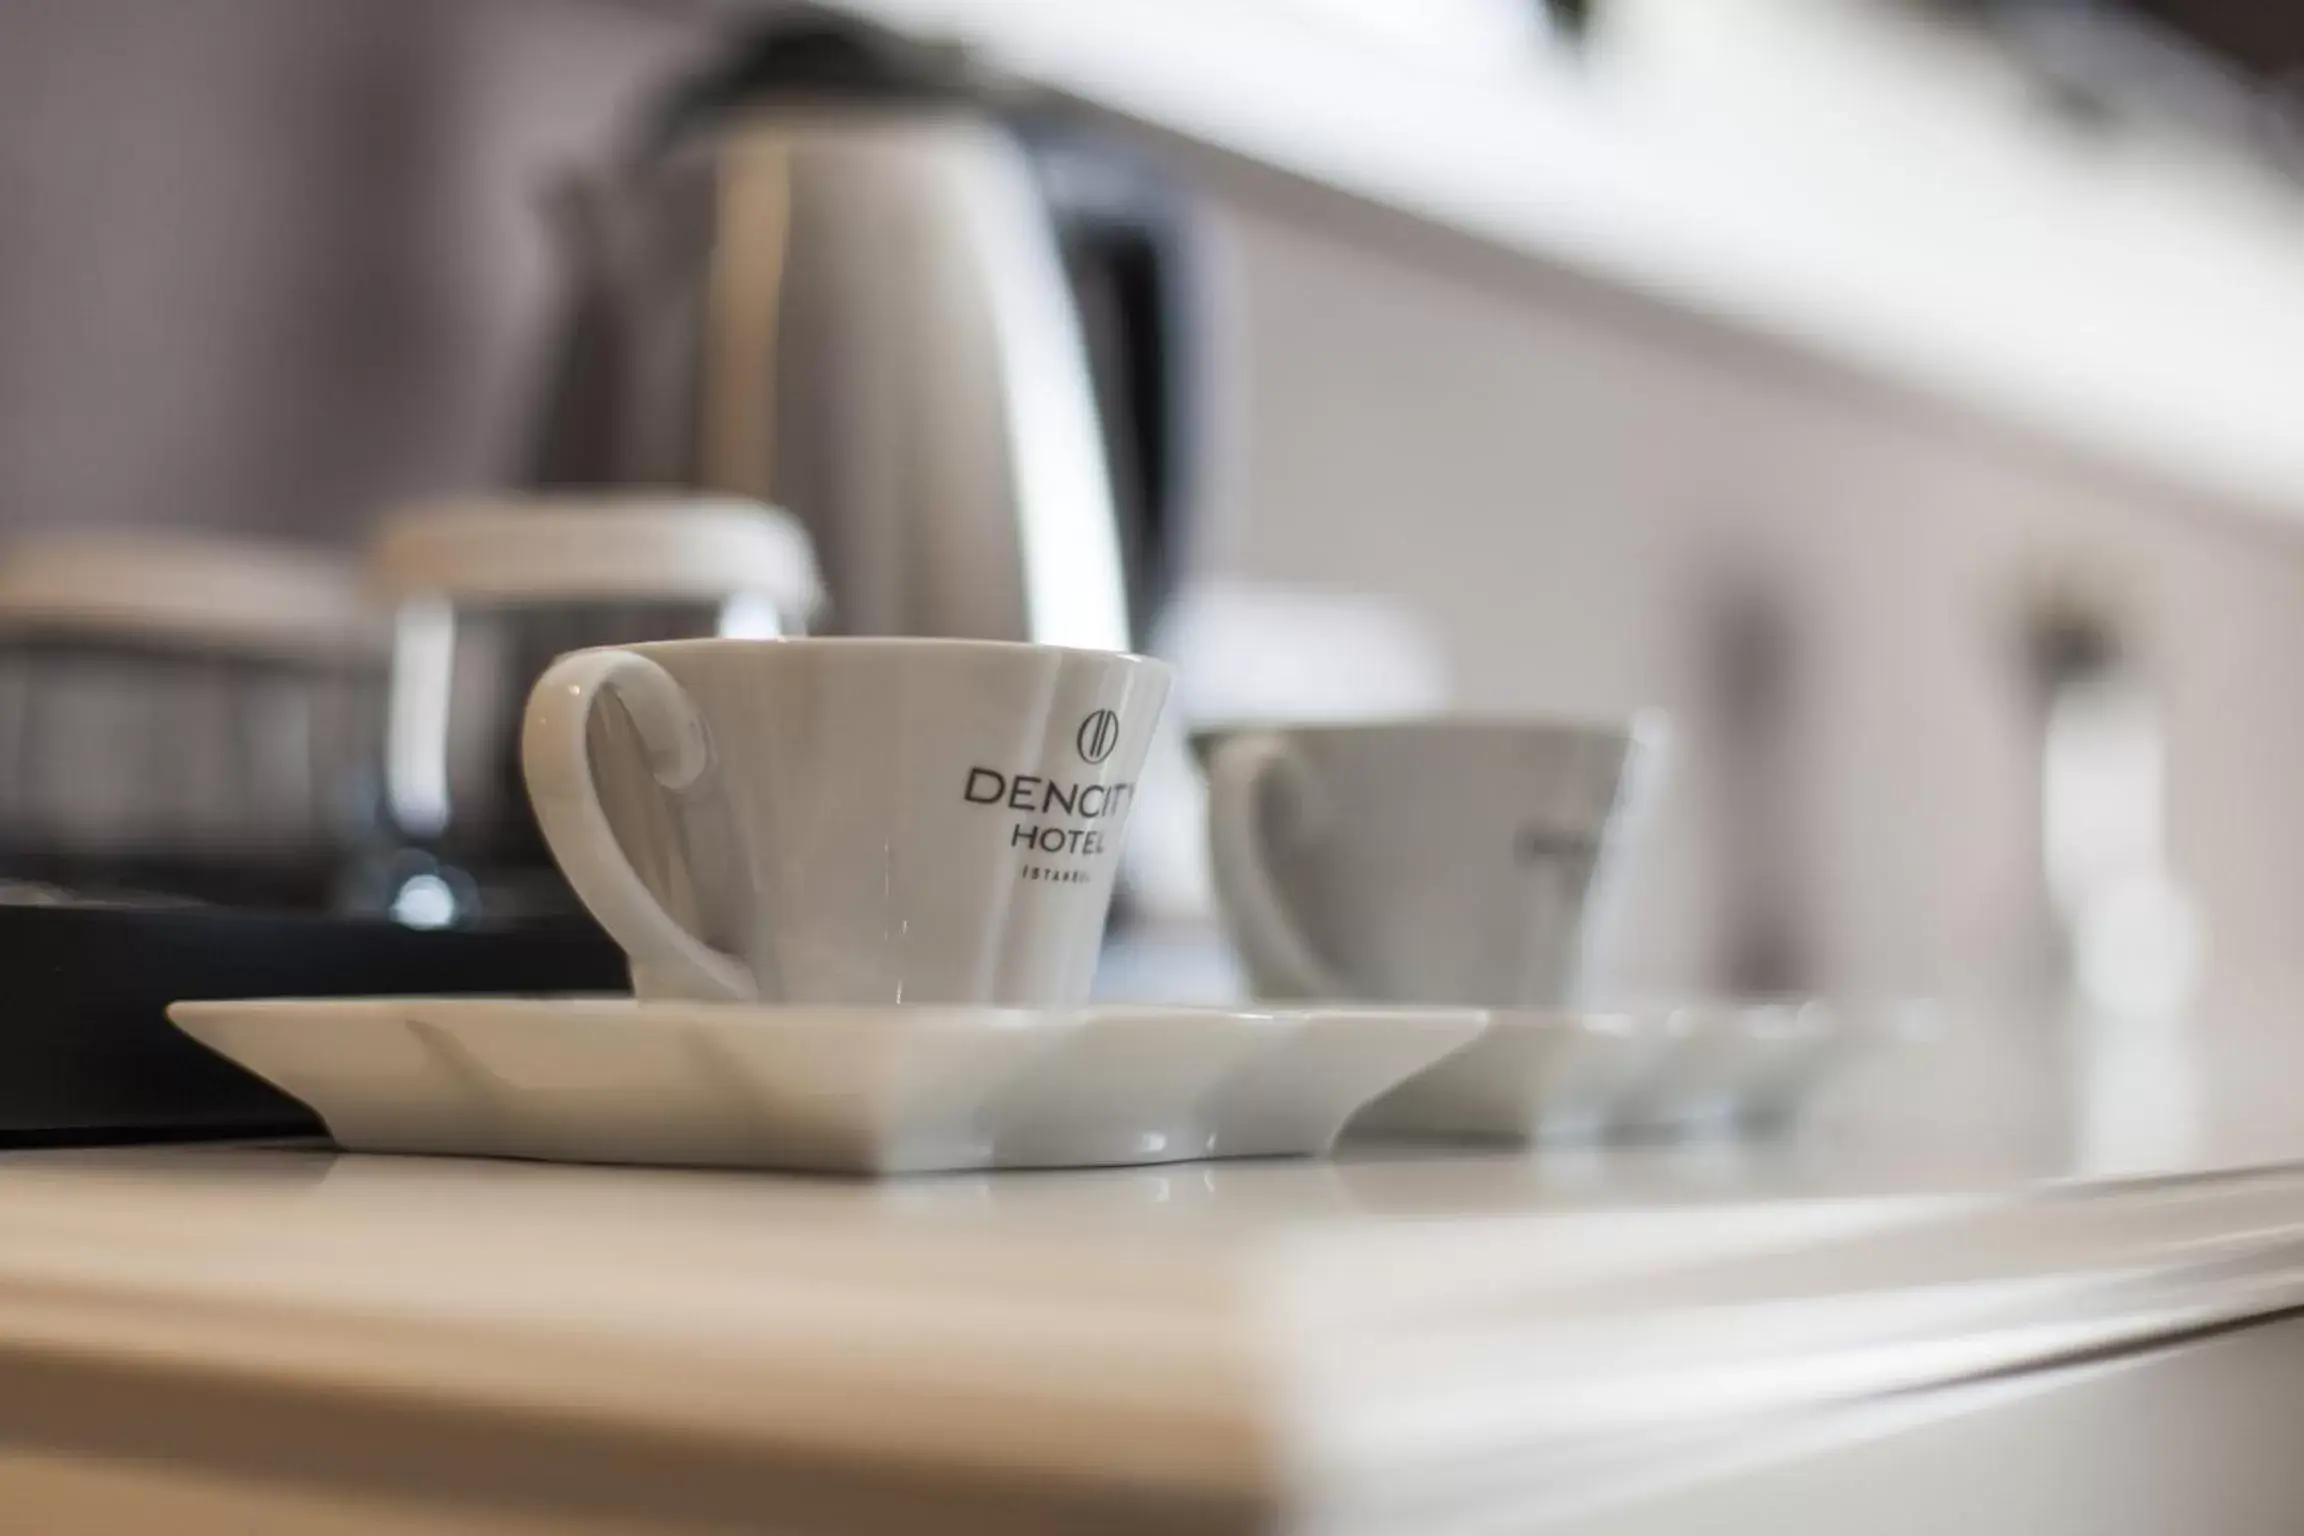 Coffee/tea facilities in Dencity Hotels & Spa